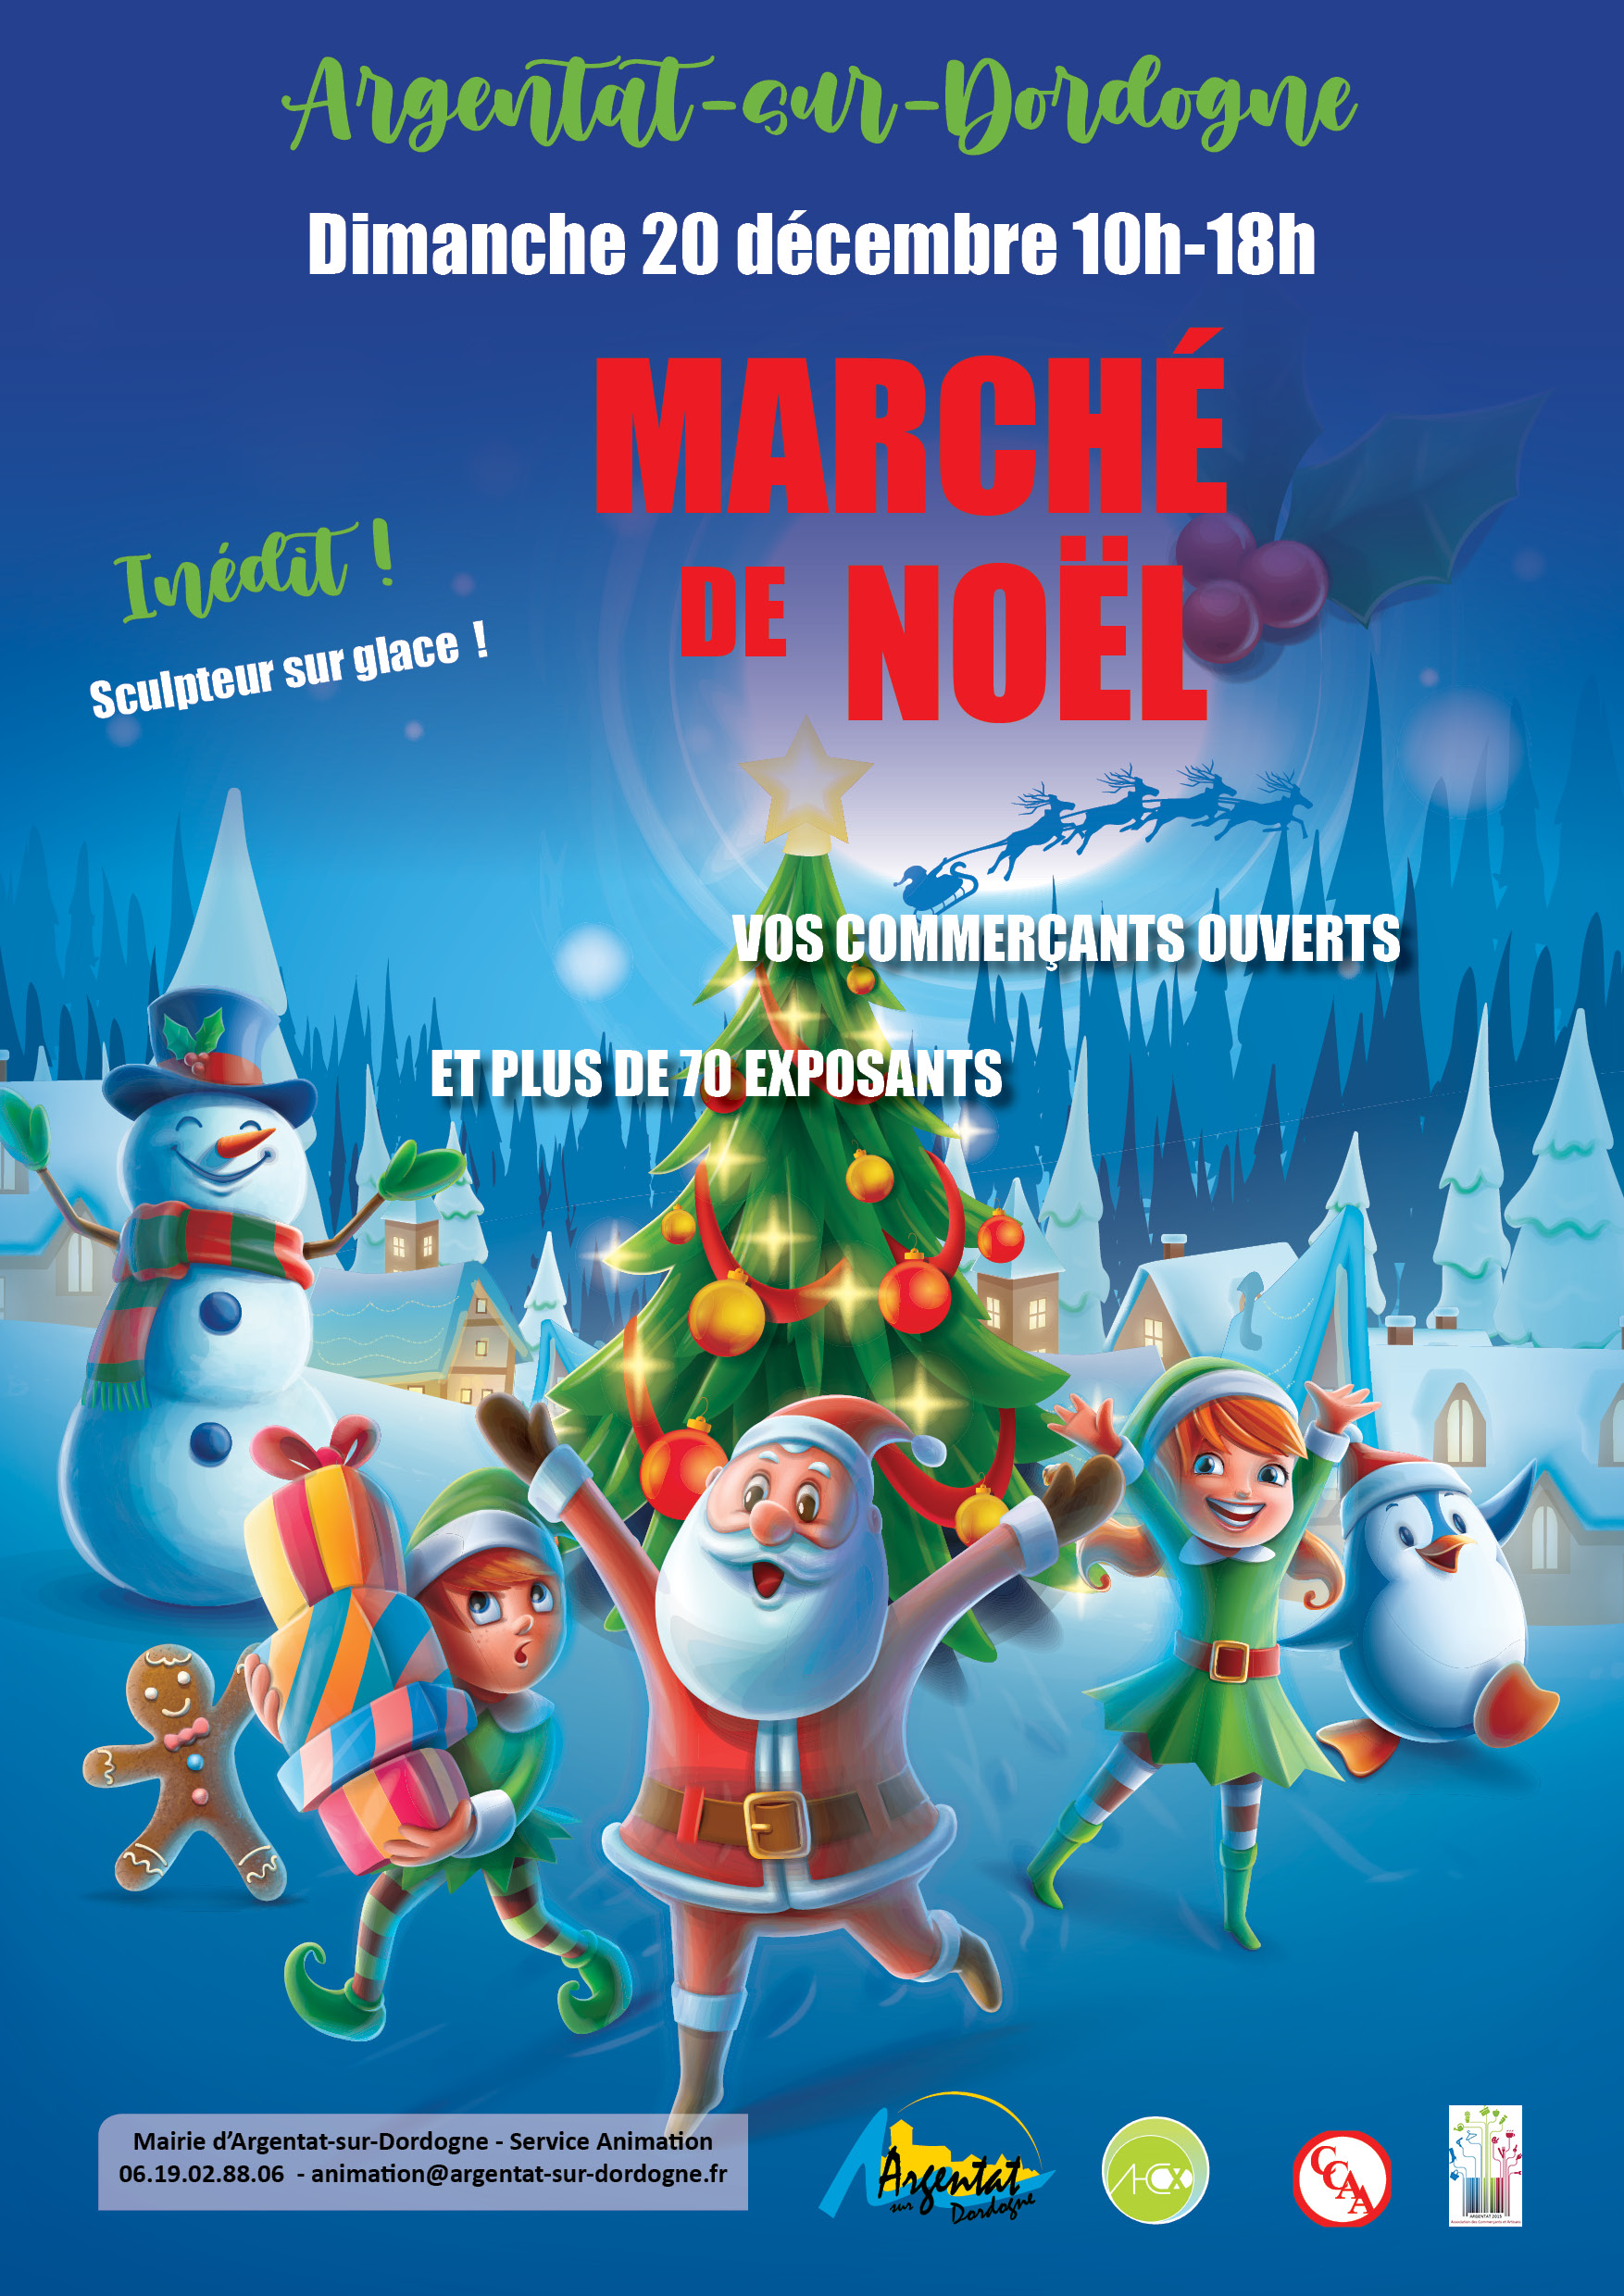 Marché de Noël Dimanche 20 décembre 2020